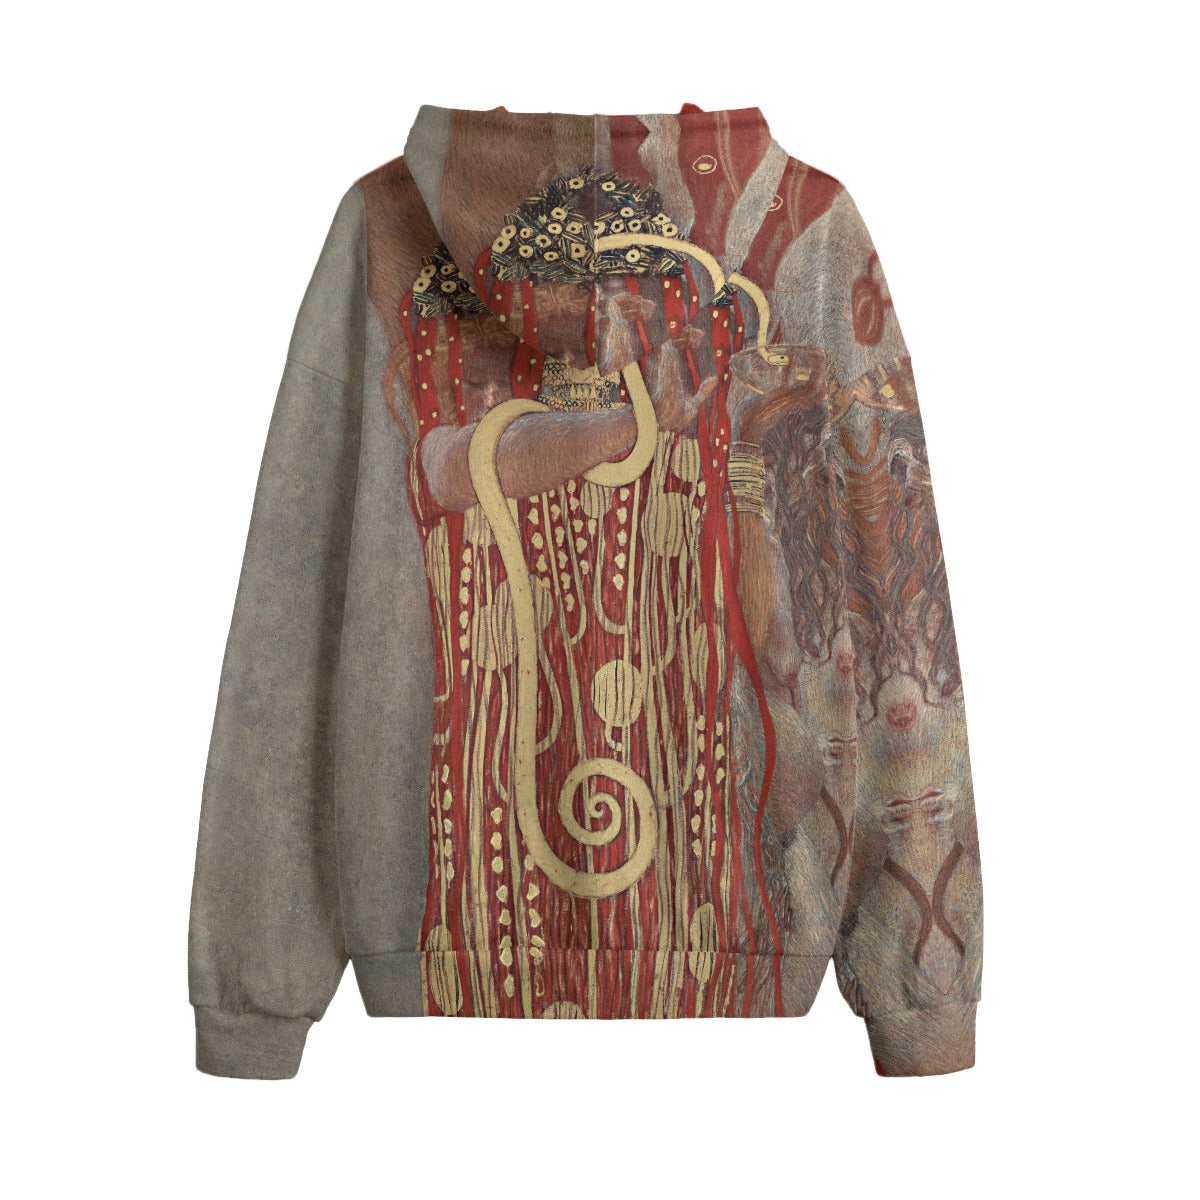 Gustav Klimt-inspired Artistic Fashion